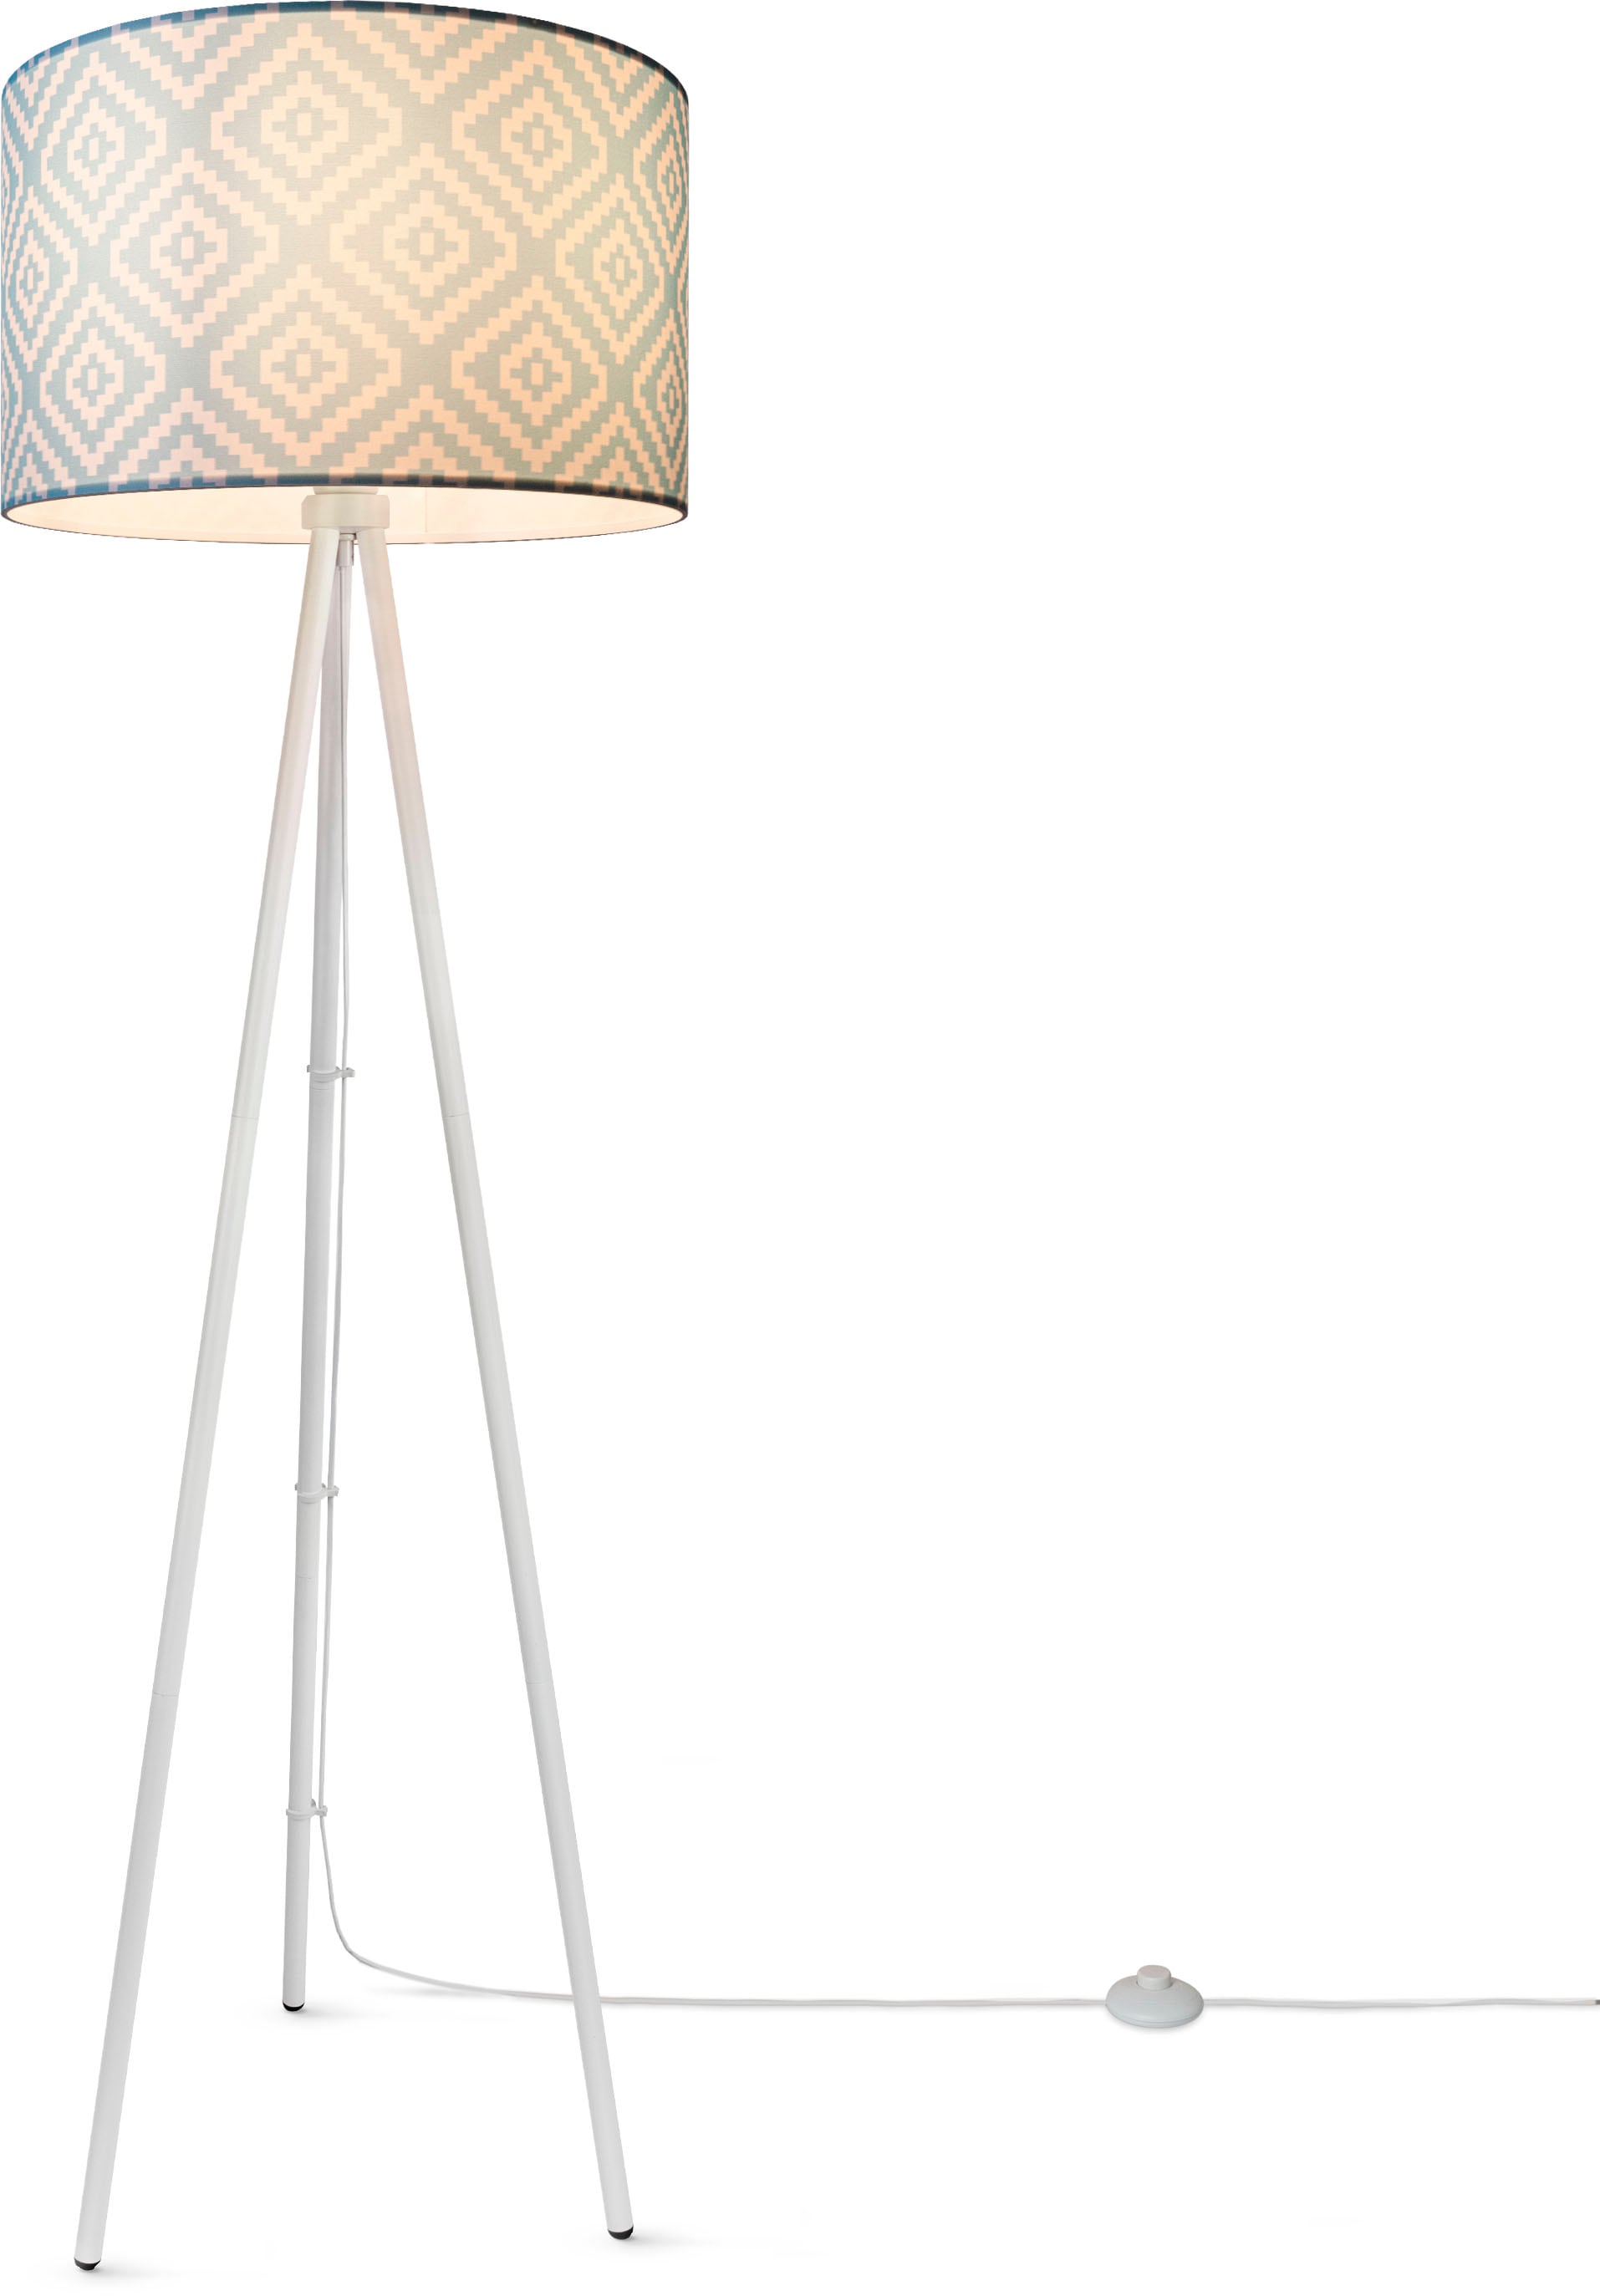 Textil | mit Modern Stehlampe Dreibein online 3 Stella«, Paco Vintage kaufen Wohnzimmer XXL Design Home Stofflampenschirm »Trina Jahren Garantie